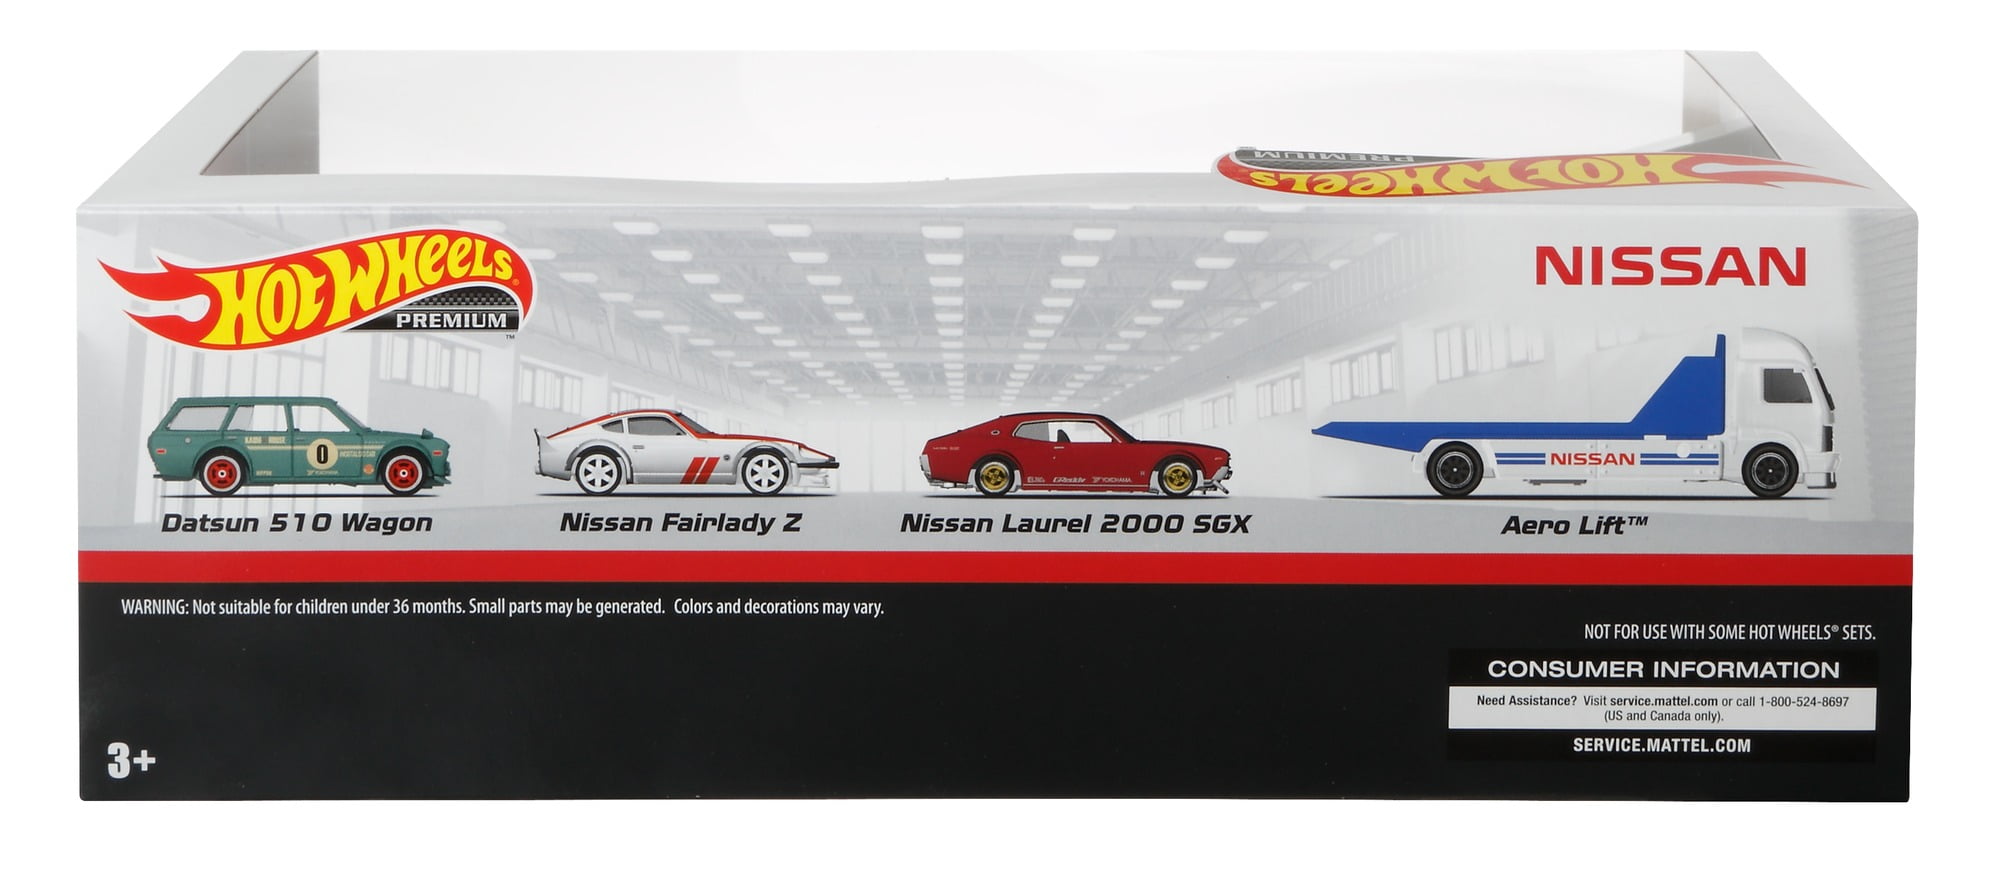 2020 Hot Wheels Premium Nissan Garage Set Walmart 1/64 Diecast Real Riders NEW 